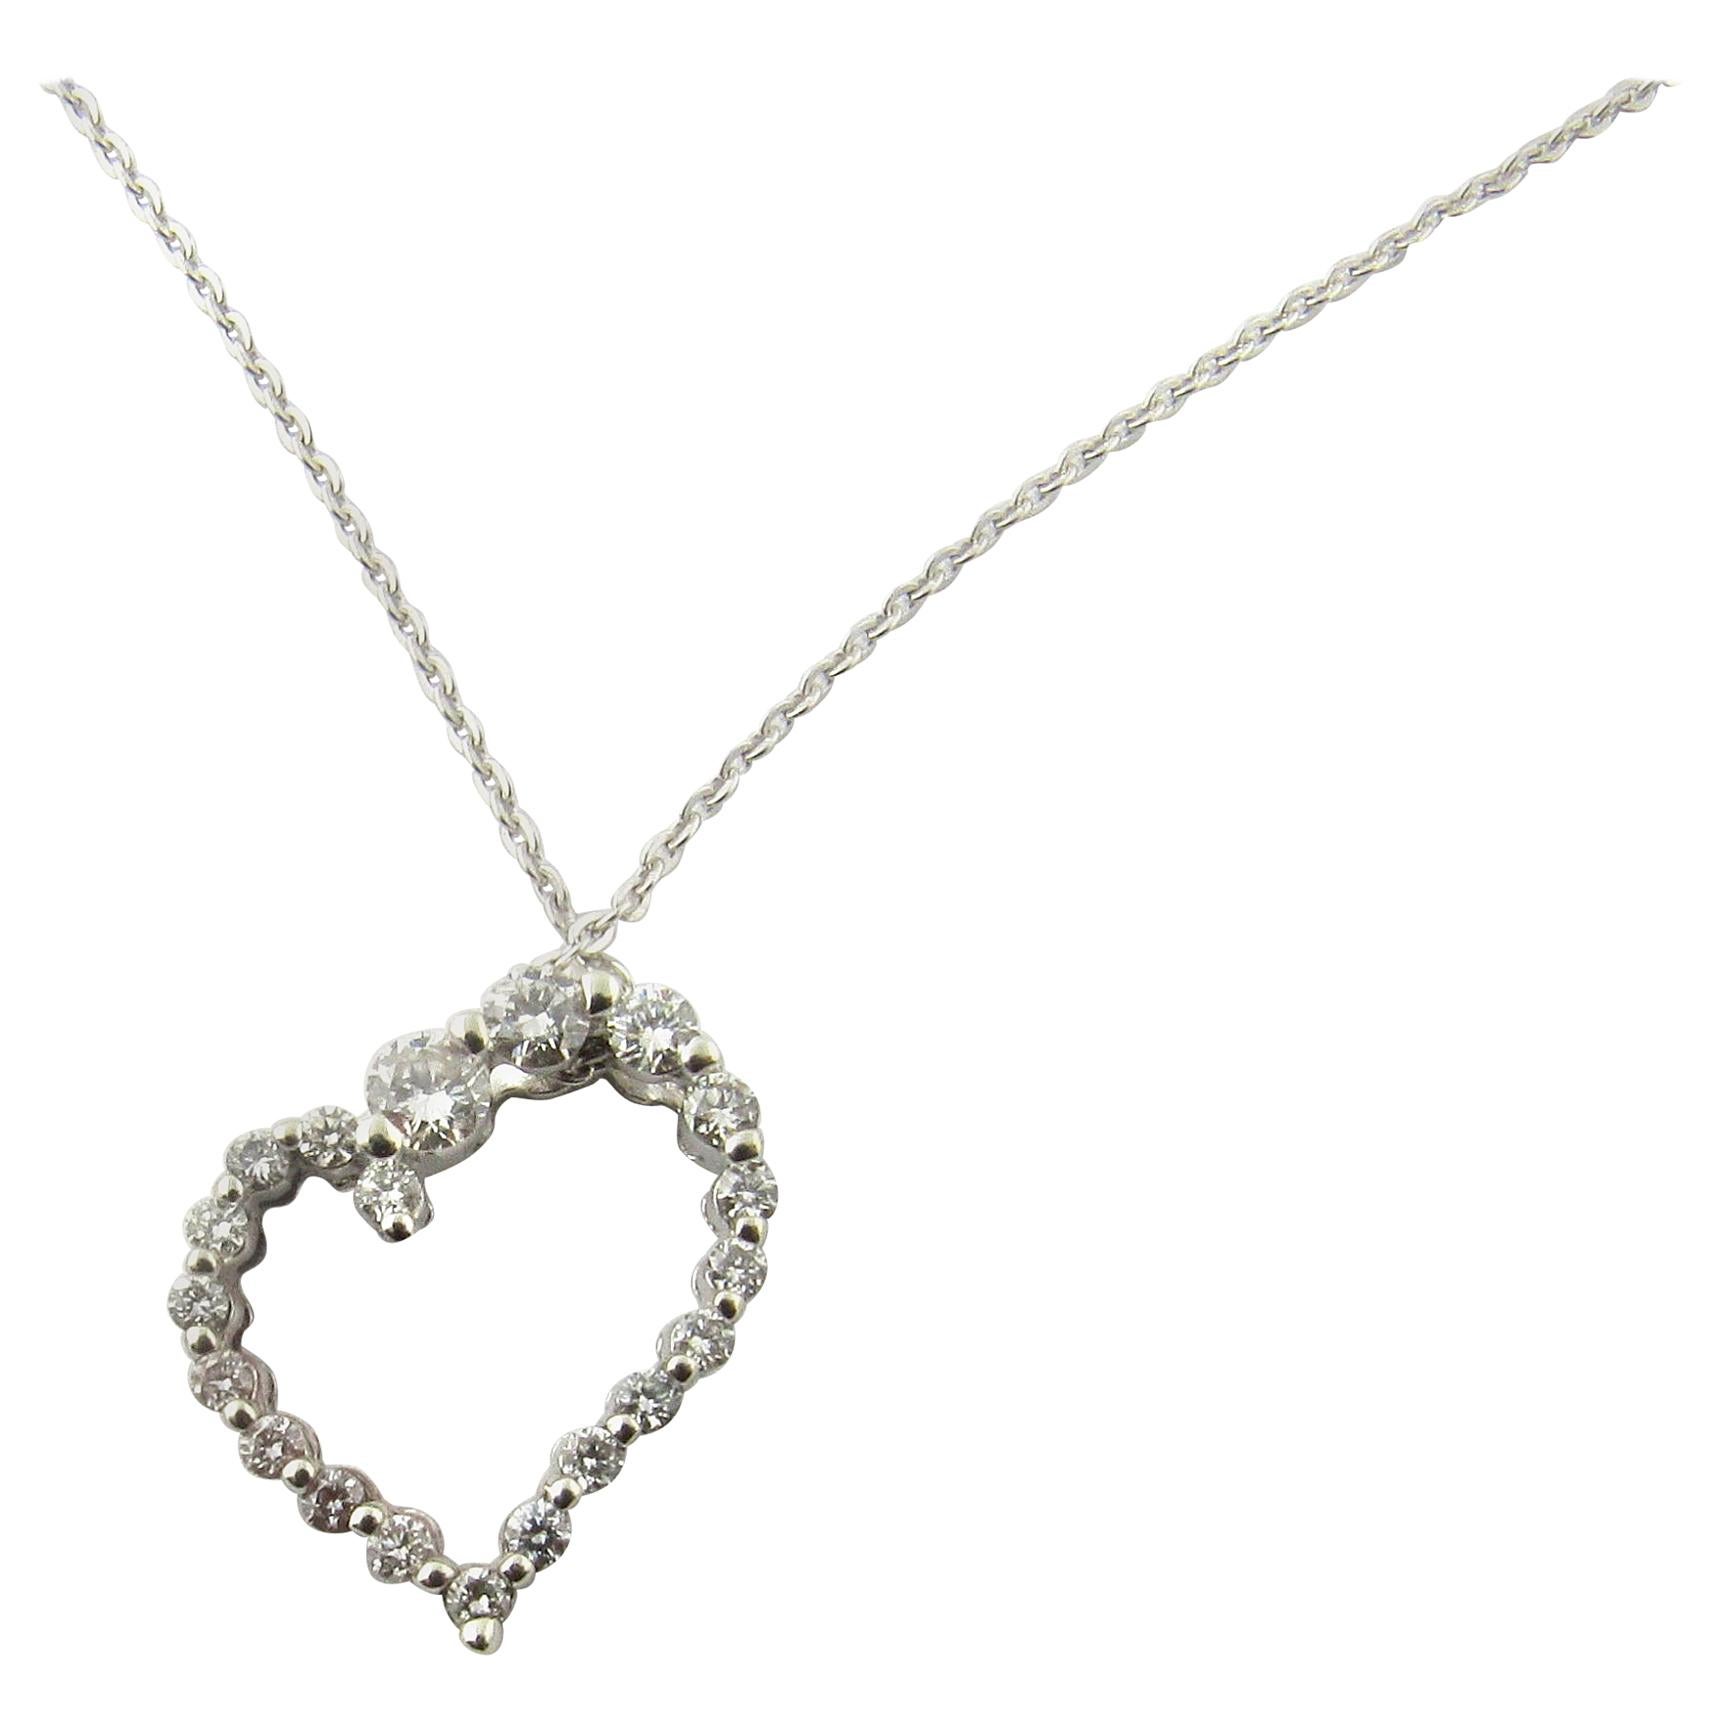 14 Karat White Gold Diamond Heart Pendant For Sale